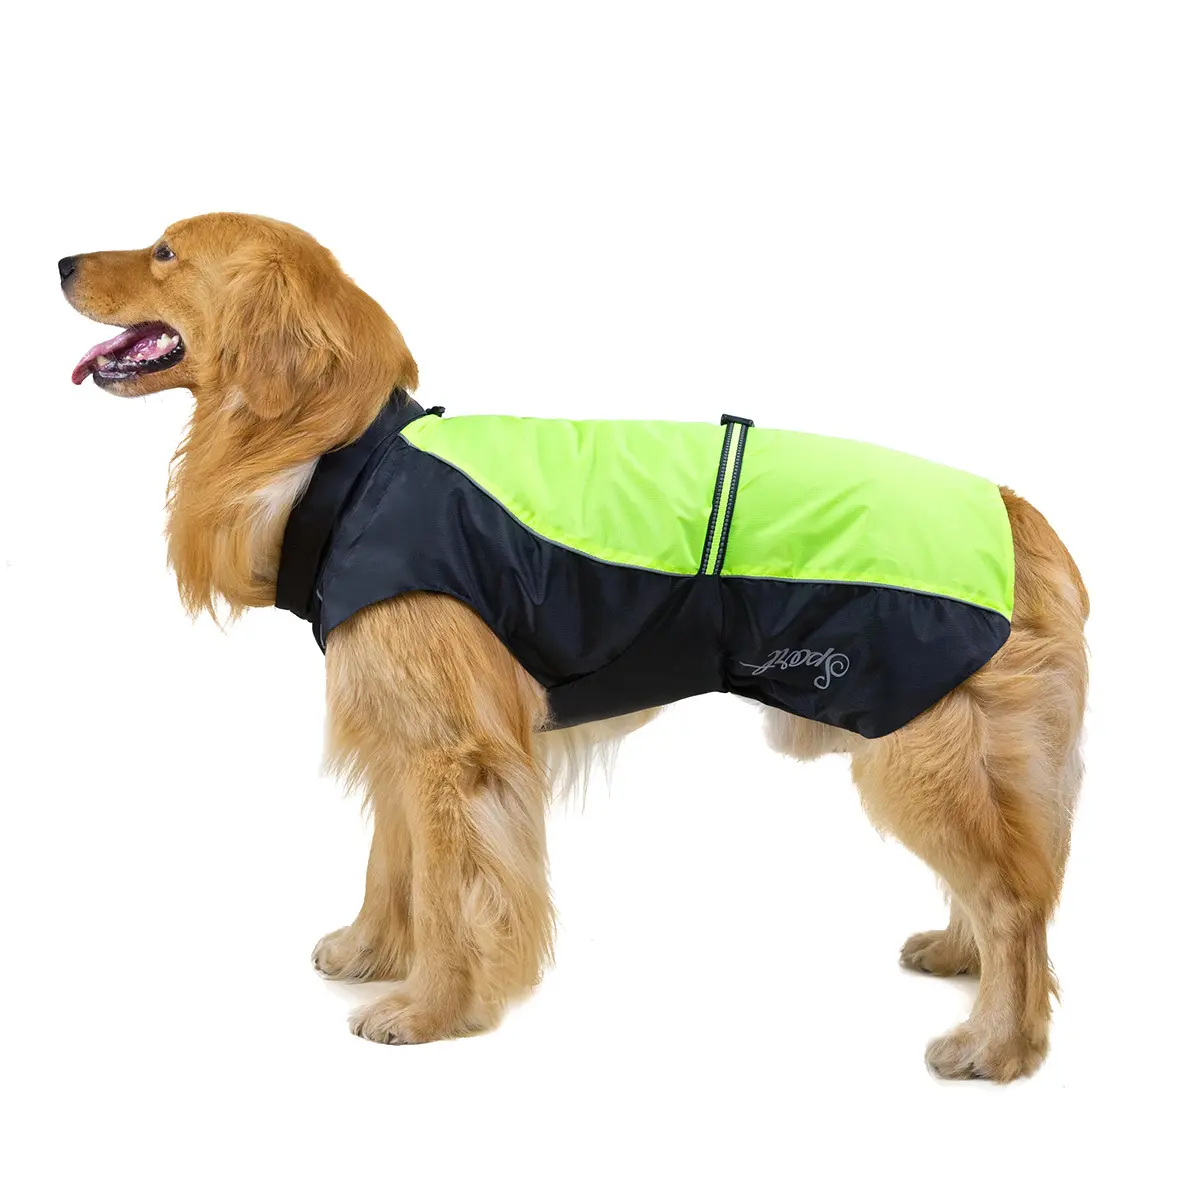 Yeni büyük köpek giysileri büyük köpek yağmurluk Pet su geçirmez yağmurluk sadece köpek giysileri